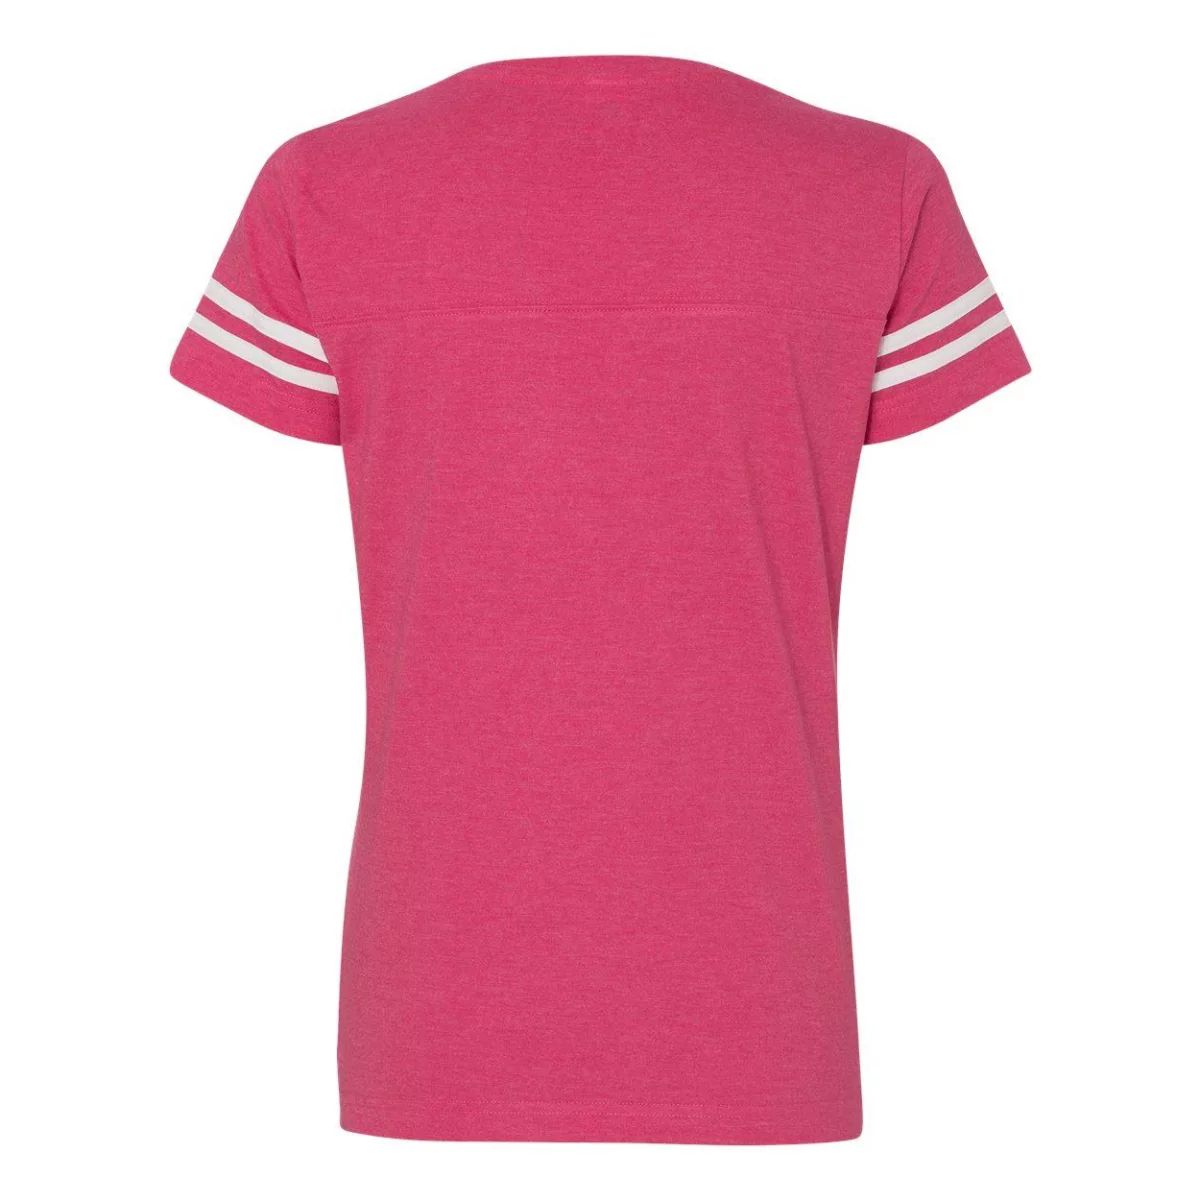 Женская футбольная футболка из тонкого джерси с v-образным вырезом LAT Floso кроссовки superdry vintage vegan white black red